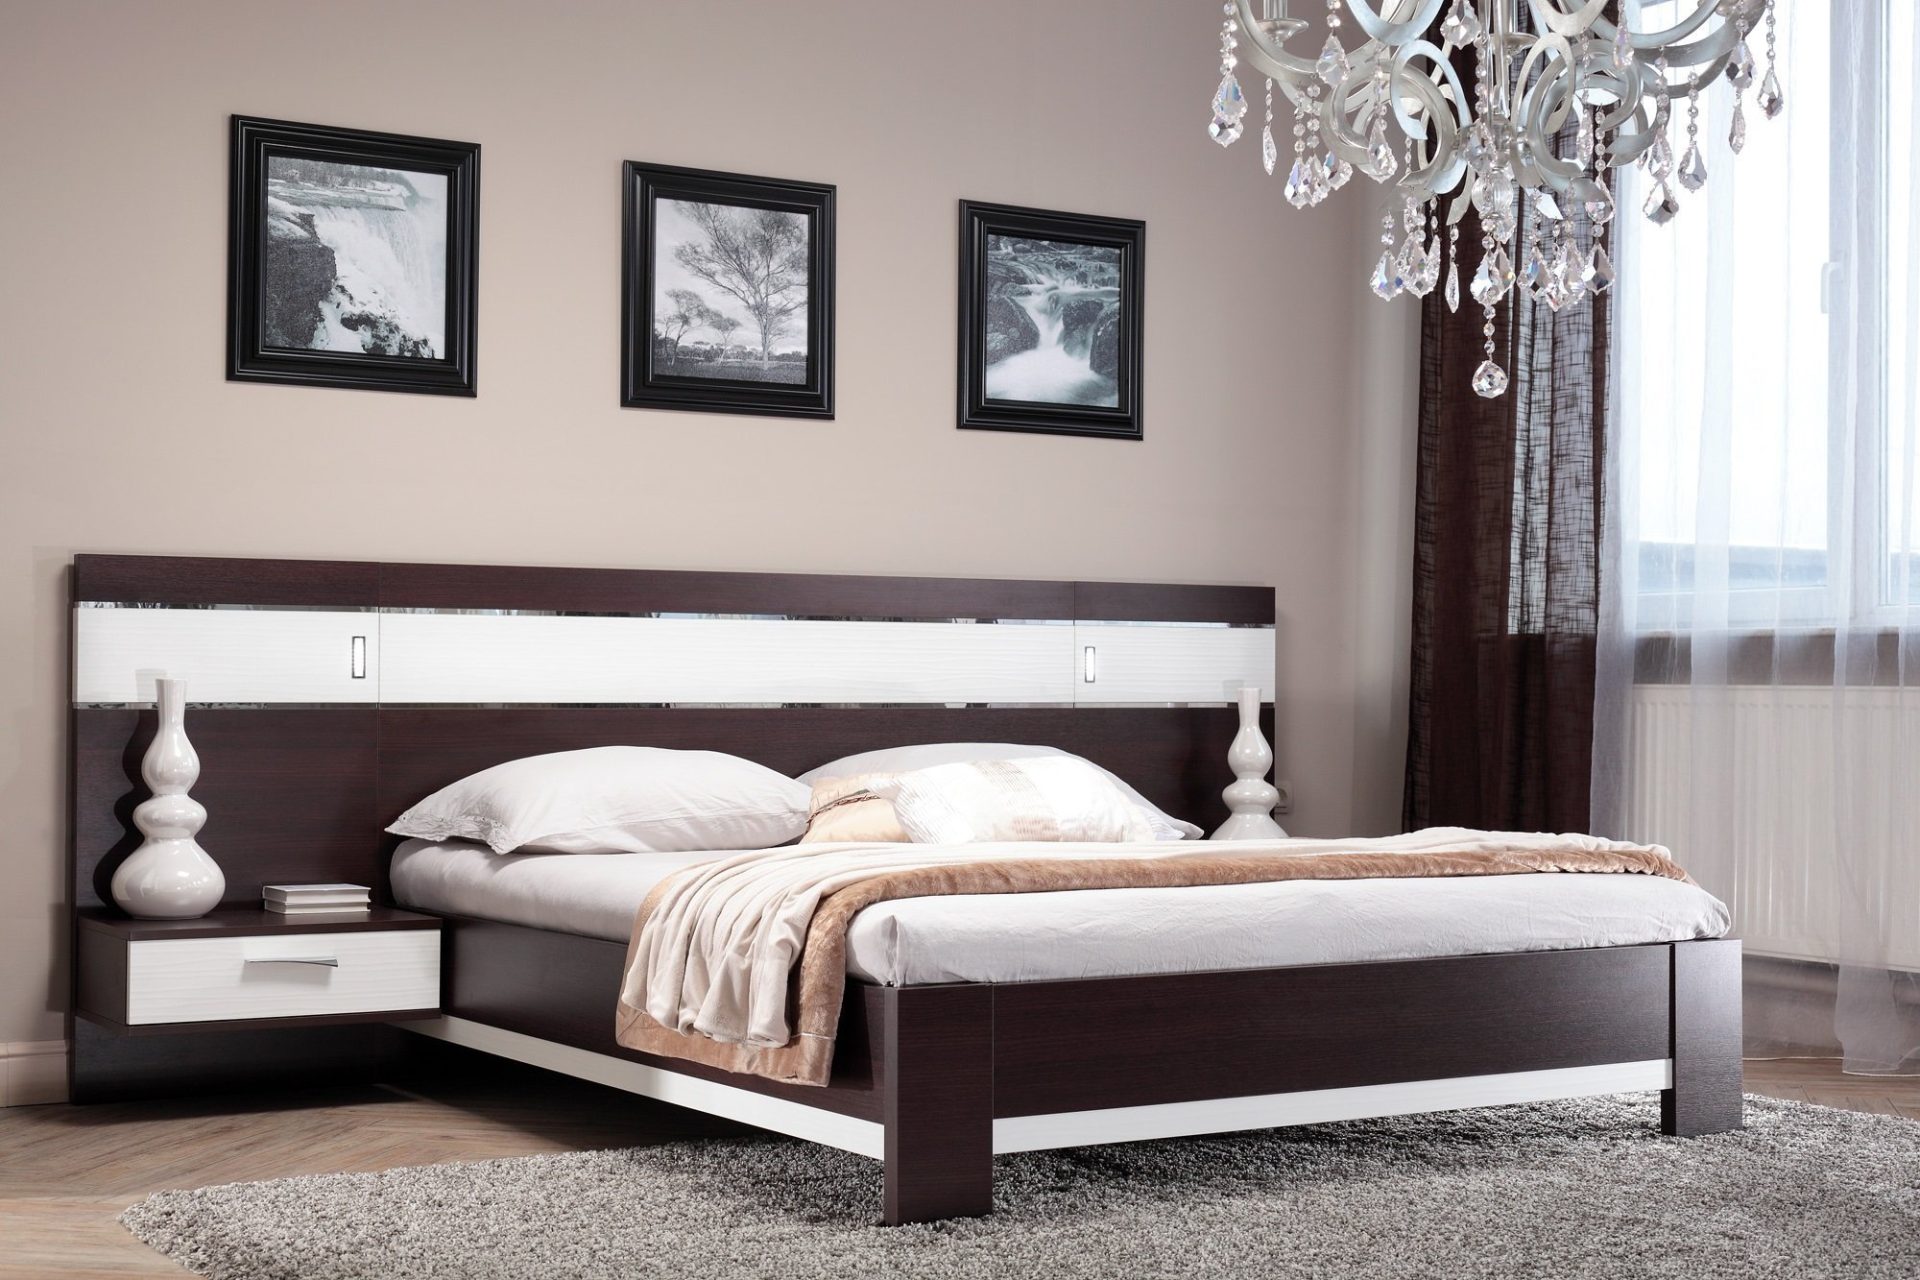 Двуспальные кровати размеры 160 200